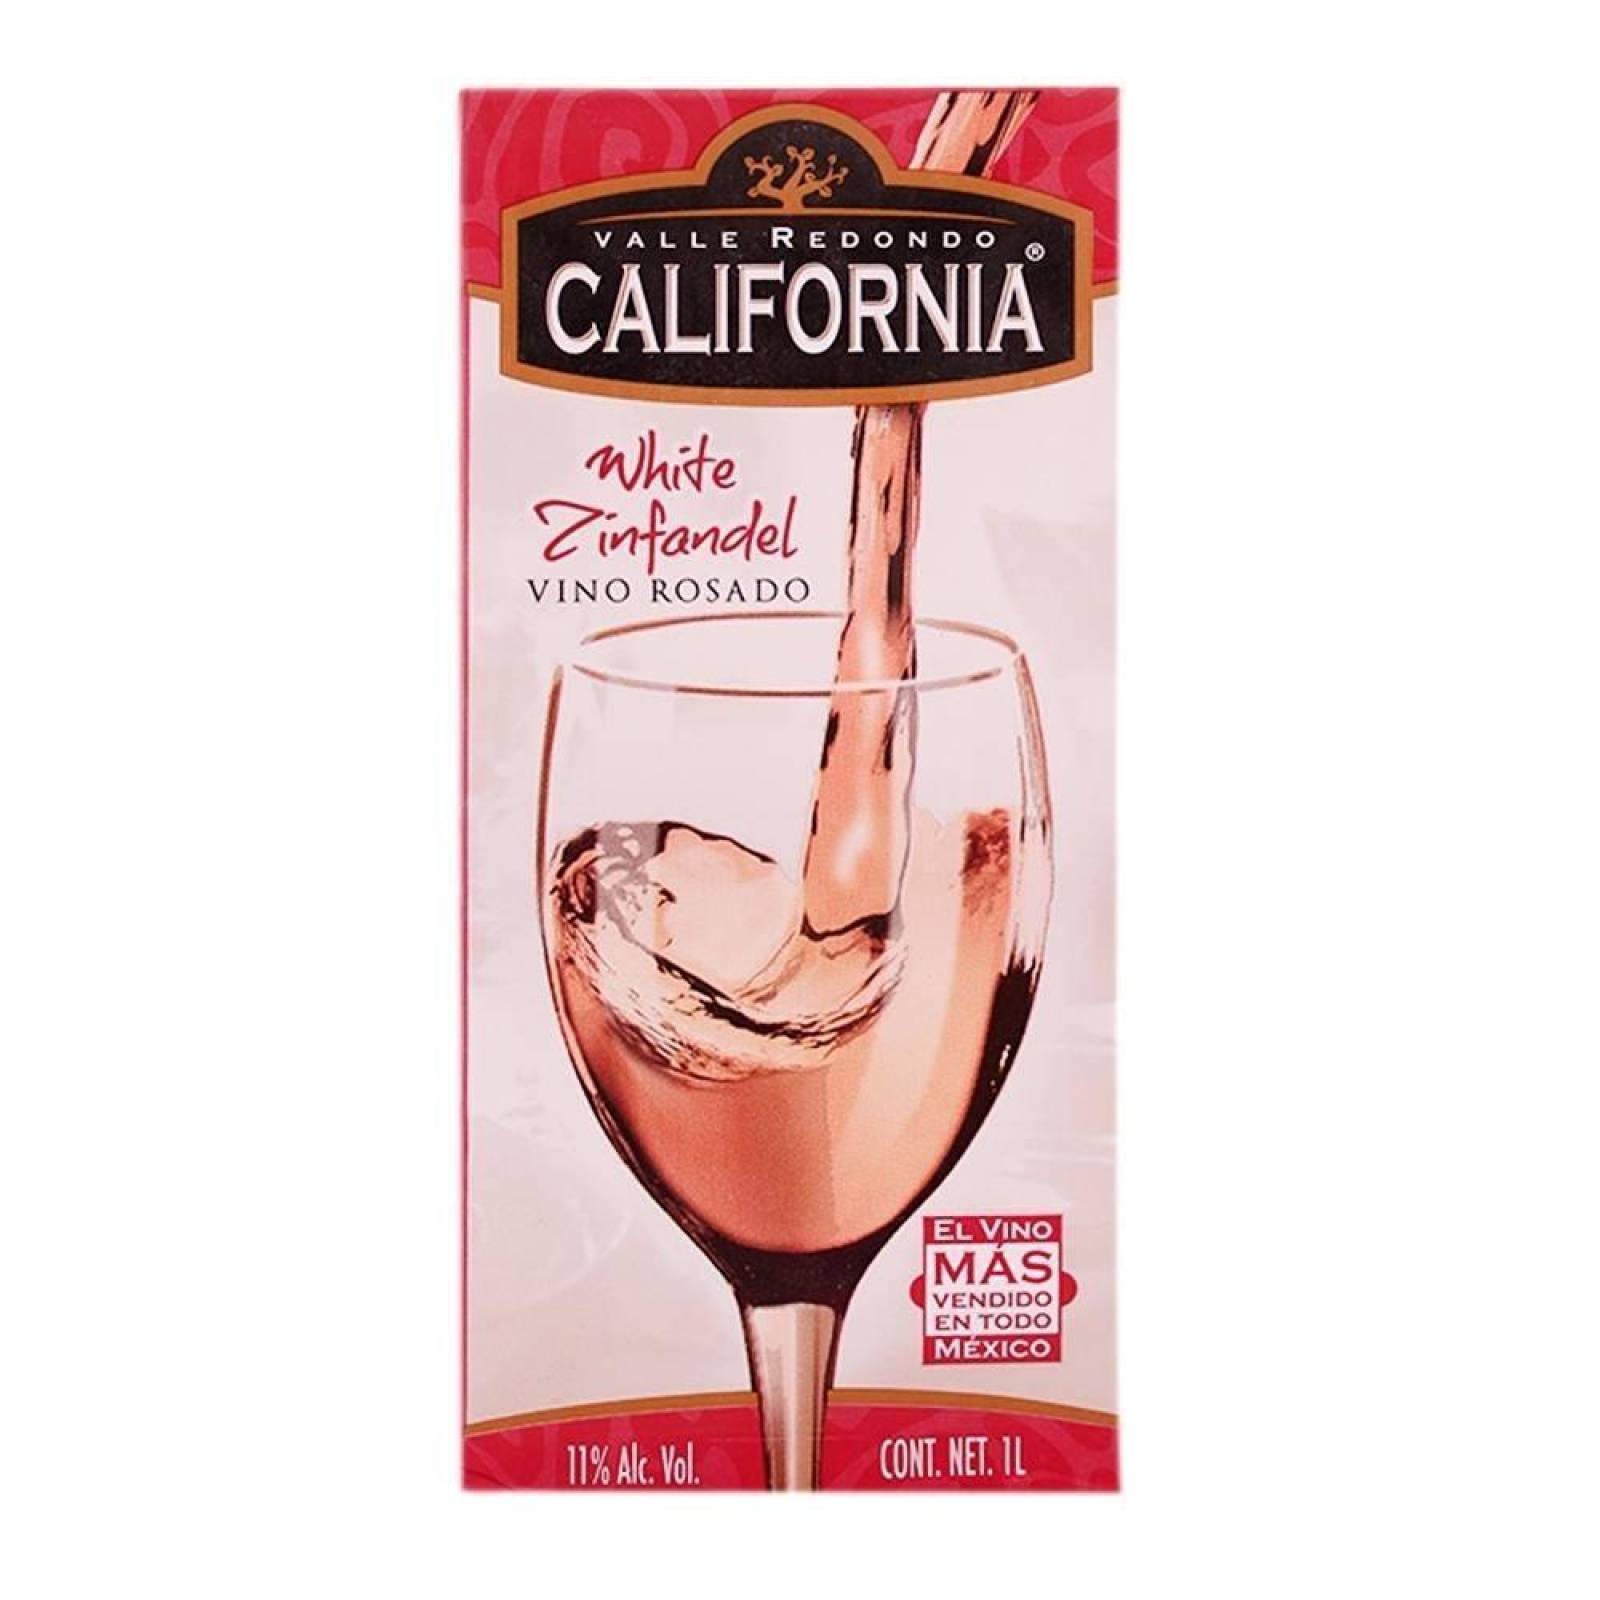 Vino Rosado California Blanc Zinfandel (Tetra Brick) 1 L 